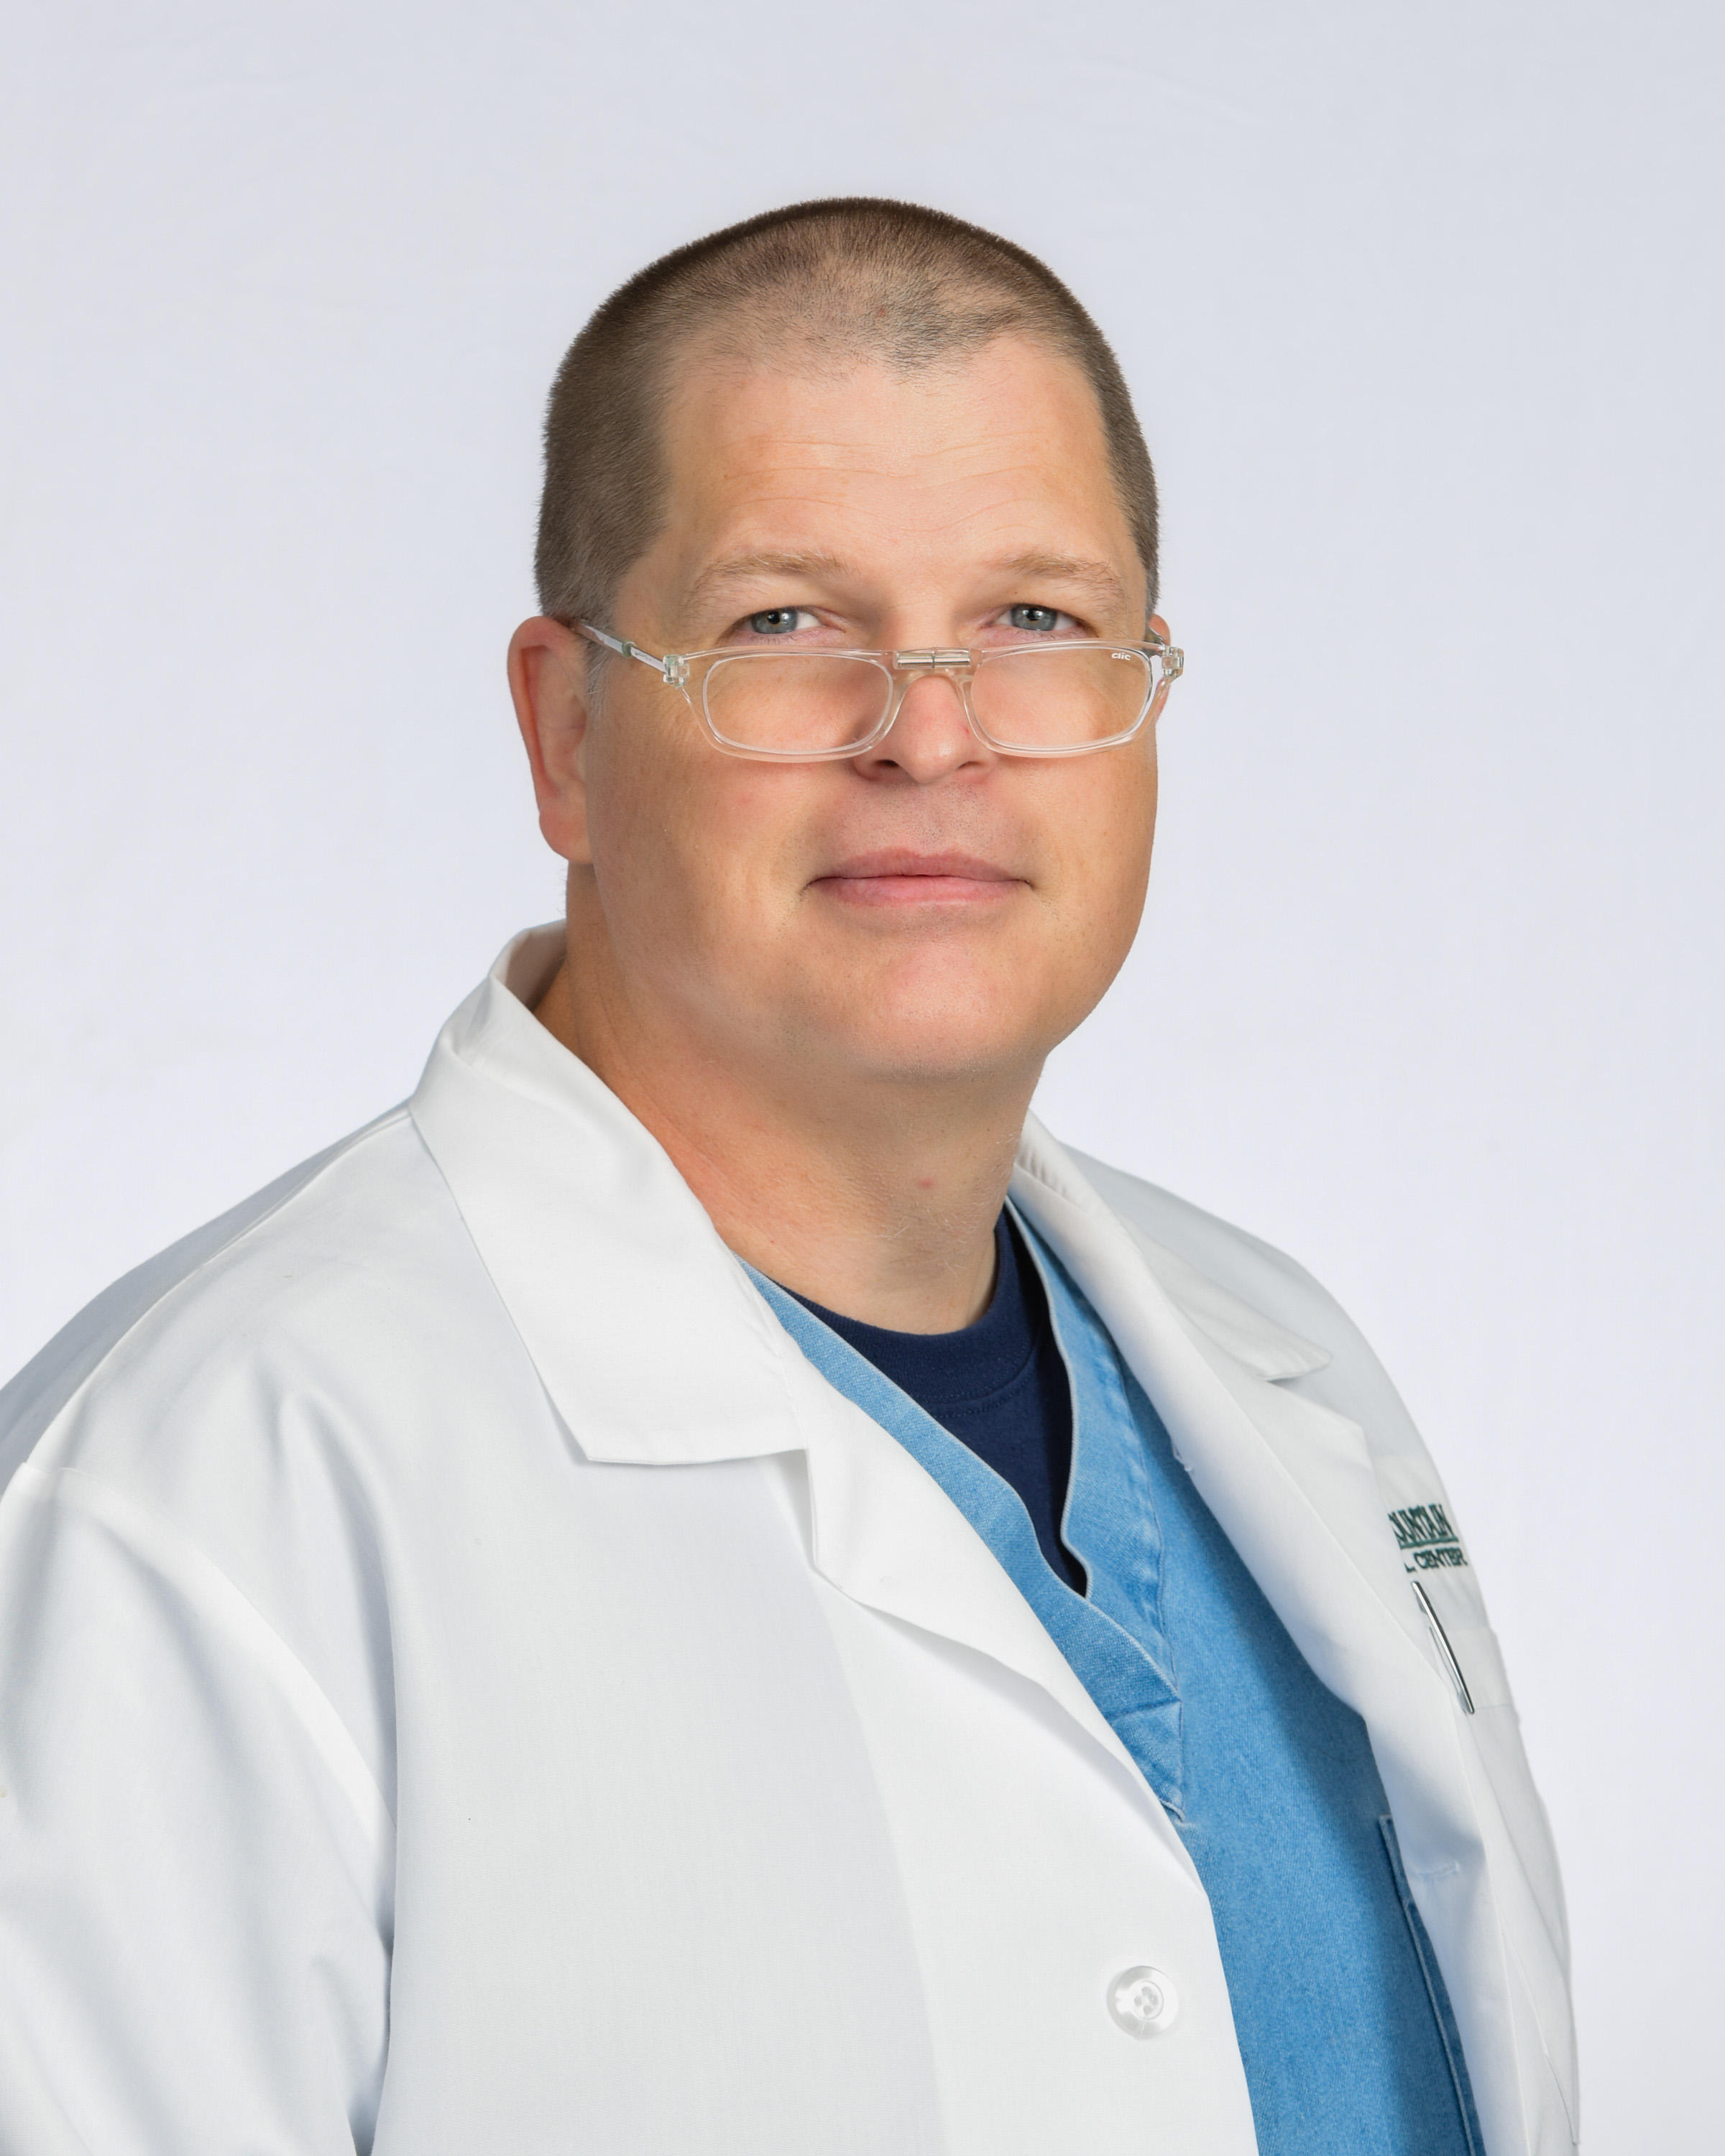 Dr. Ladd Hoffman